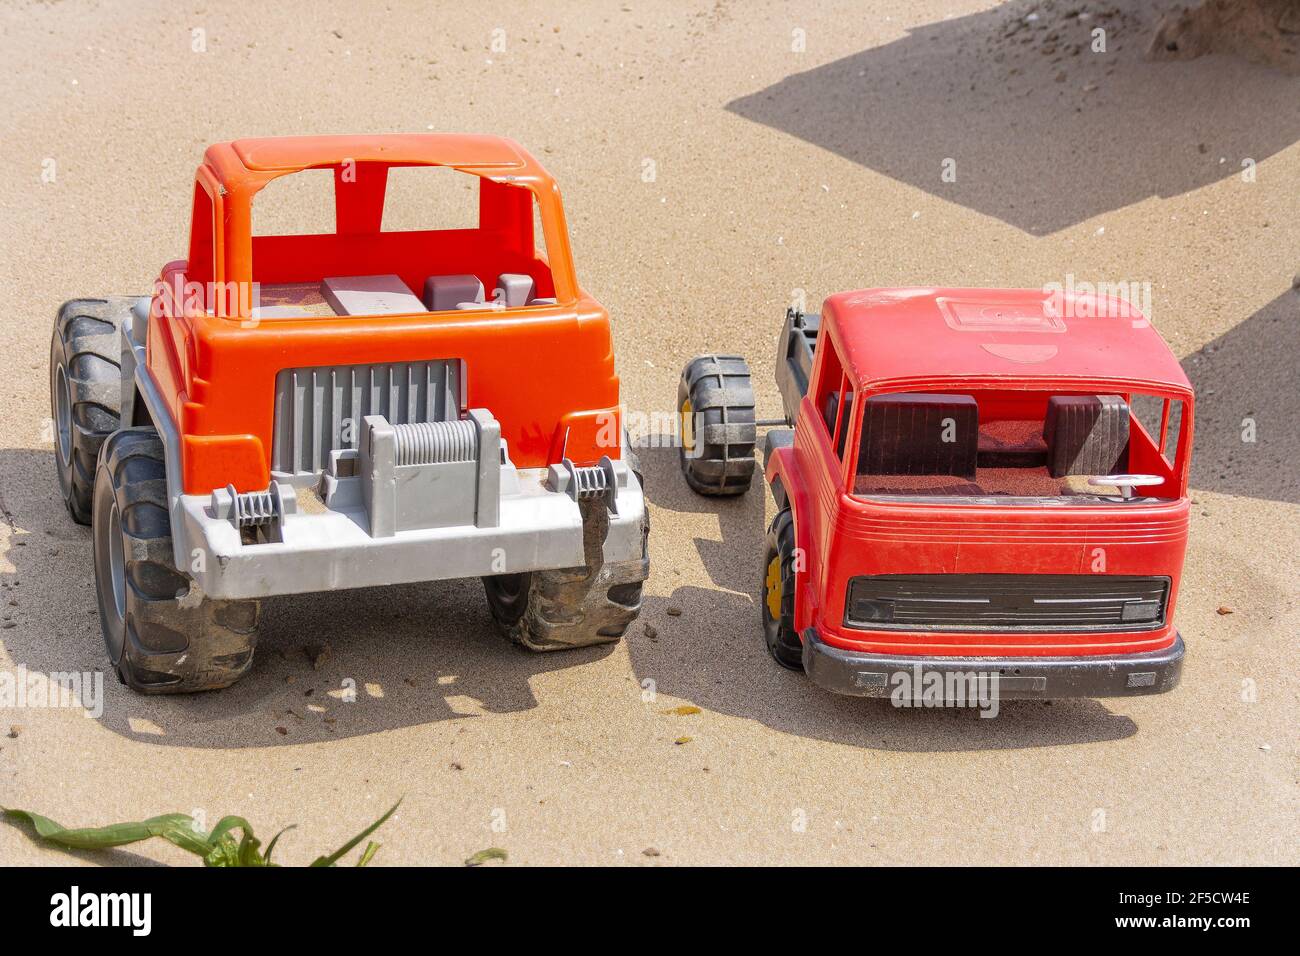 Zwei Kinder`s Spielzeugautos, aus Vorbesitz, gebrochen stehen auf dem Sand unter der hellen Sommersonne Stockfoto